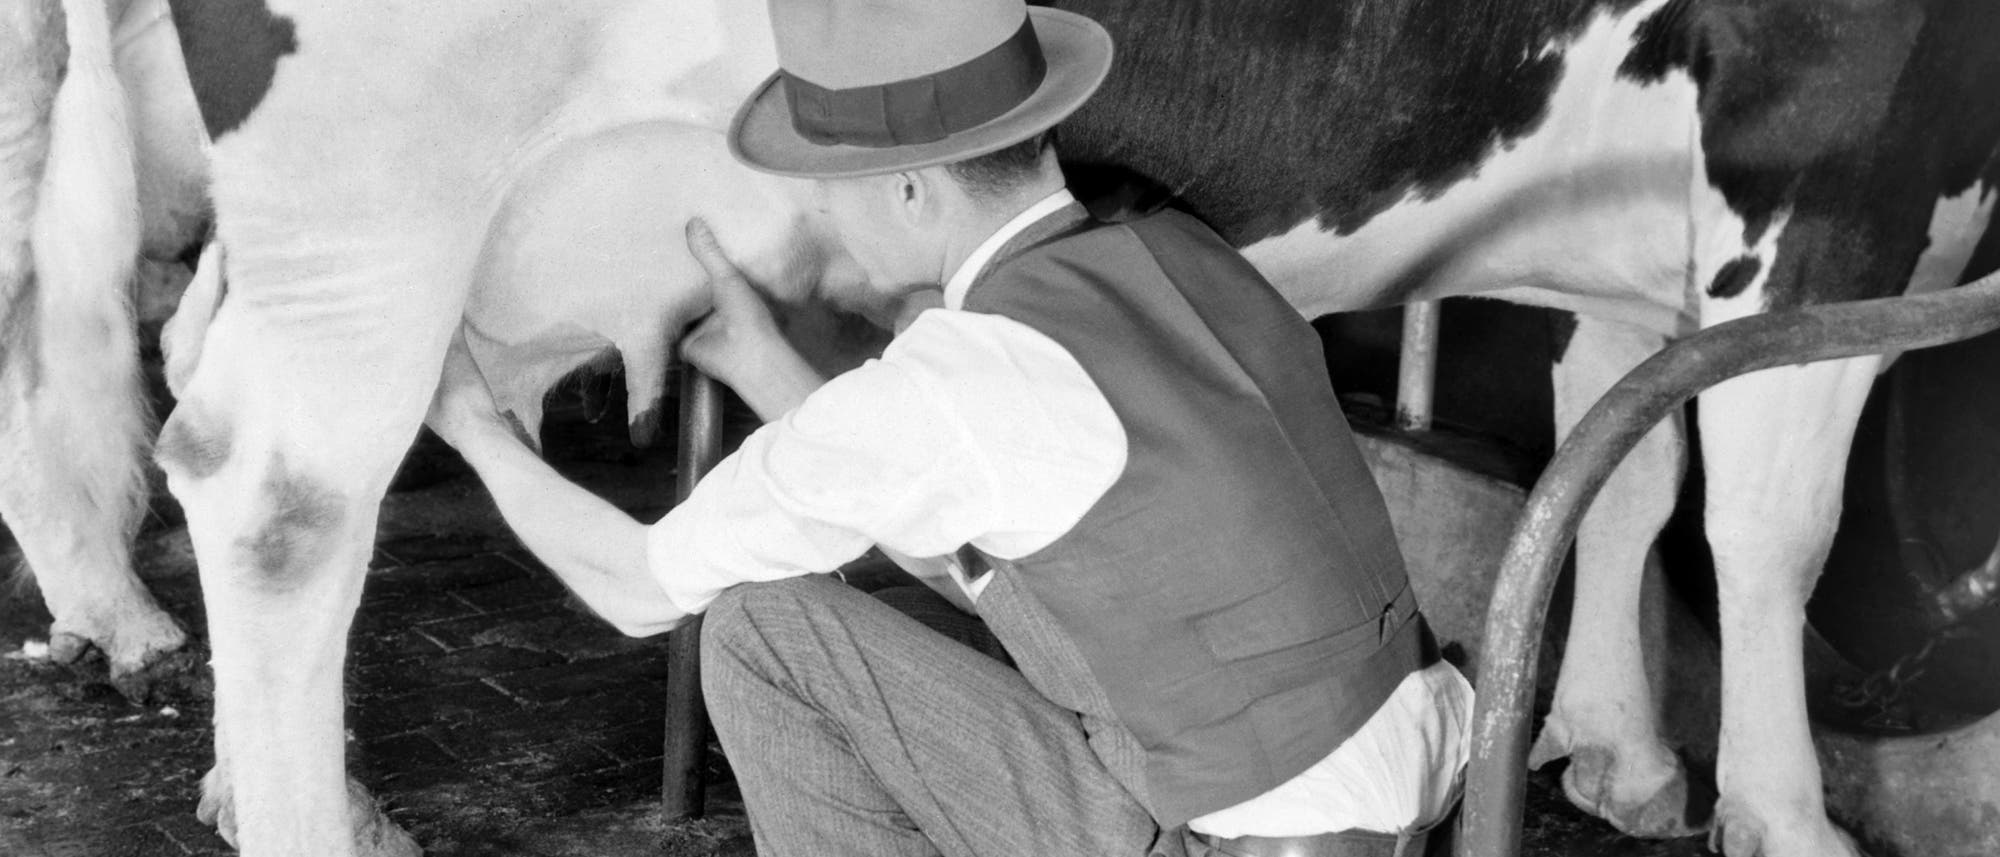 Untersuchung von Kühen um bakterielle Verunreinigung zu verhindern